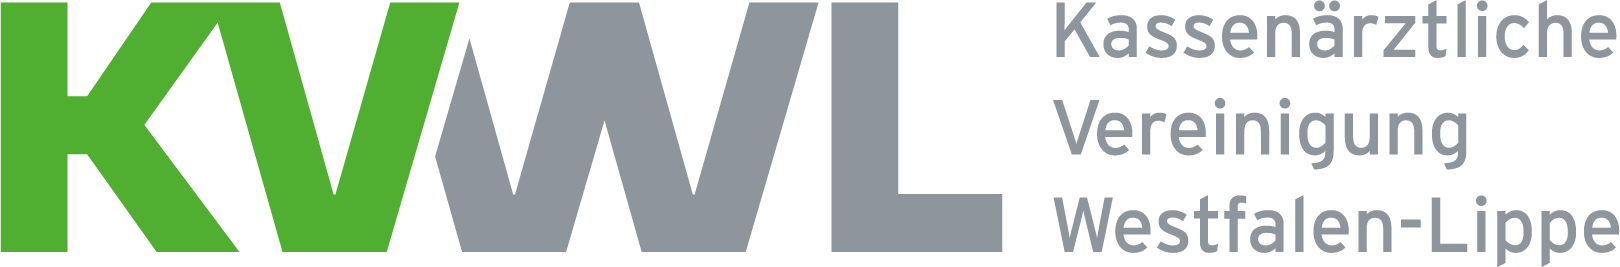 Logo der kassenärztlichen Vereinigung Westfalen-Lippe